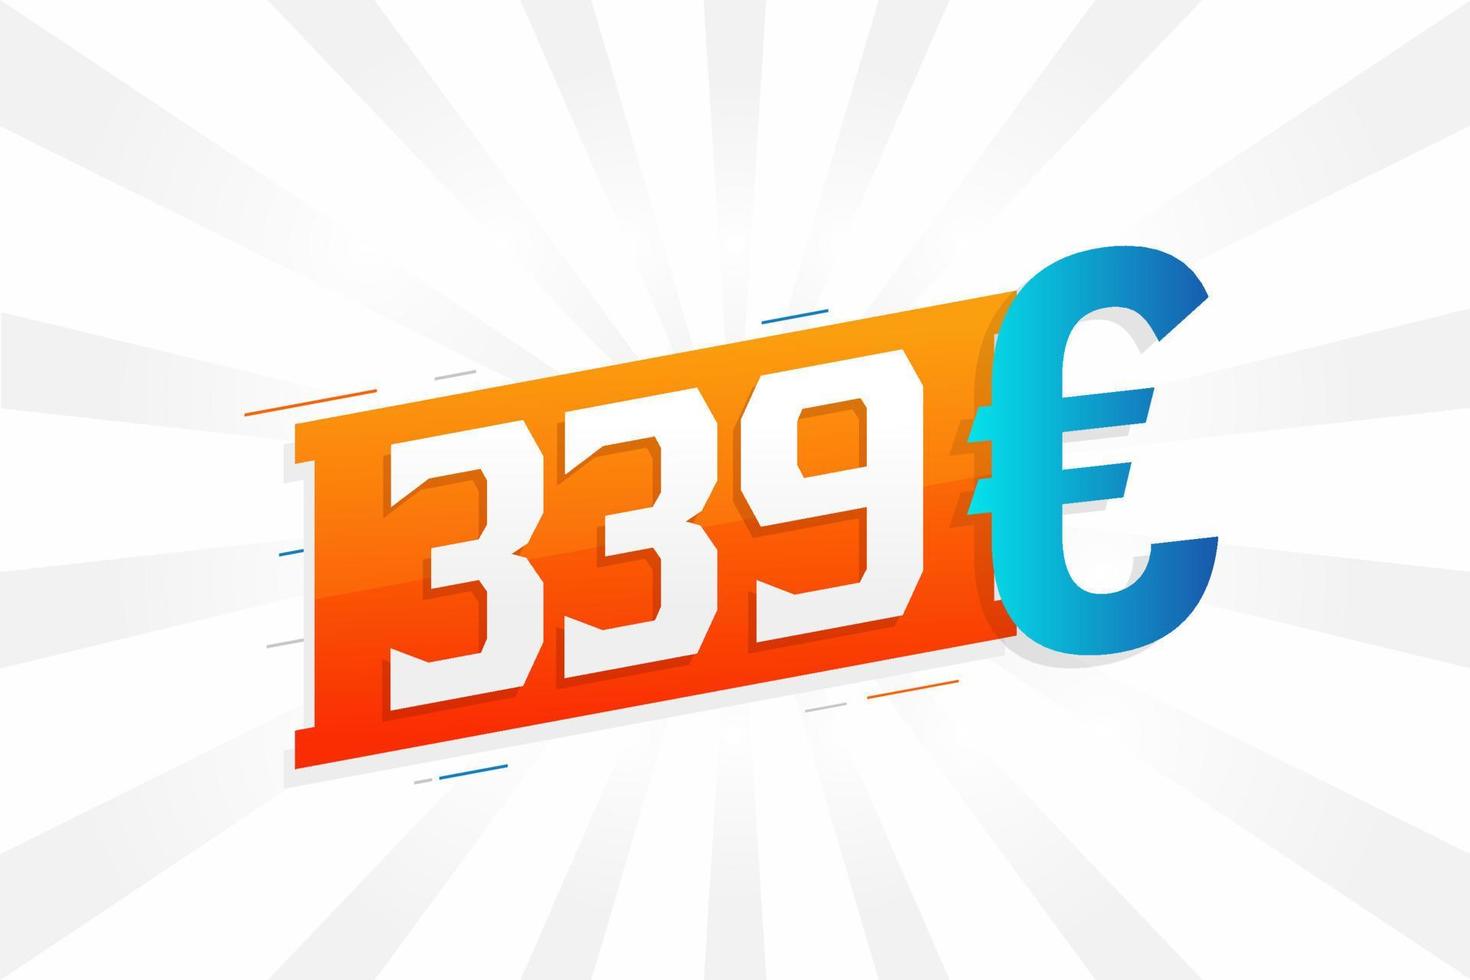 339 symbole de texte vectoriel de devise euro. 339 euros vecteur de stock d'argent de l'union européenne